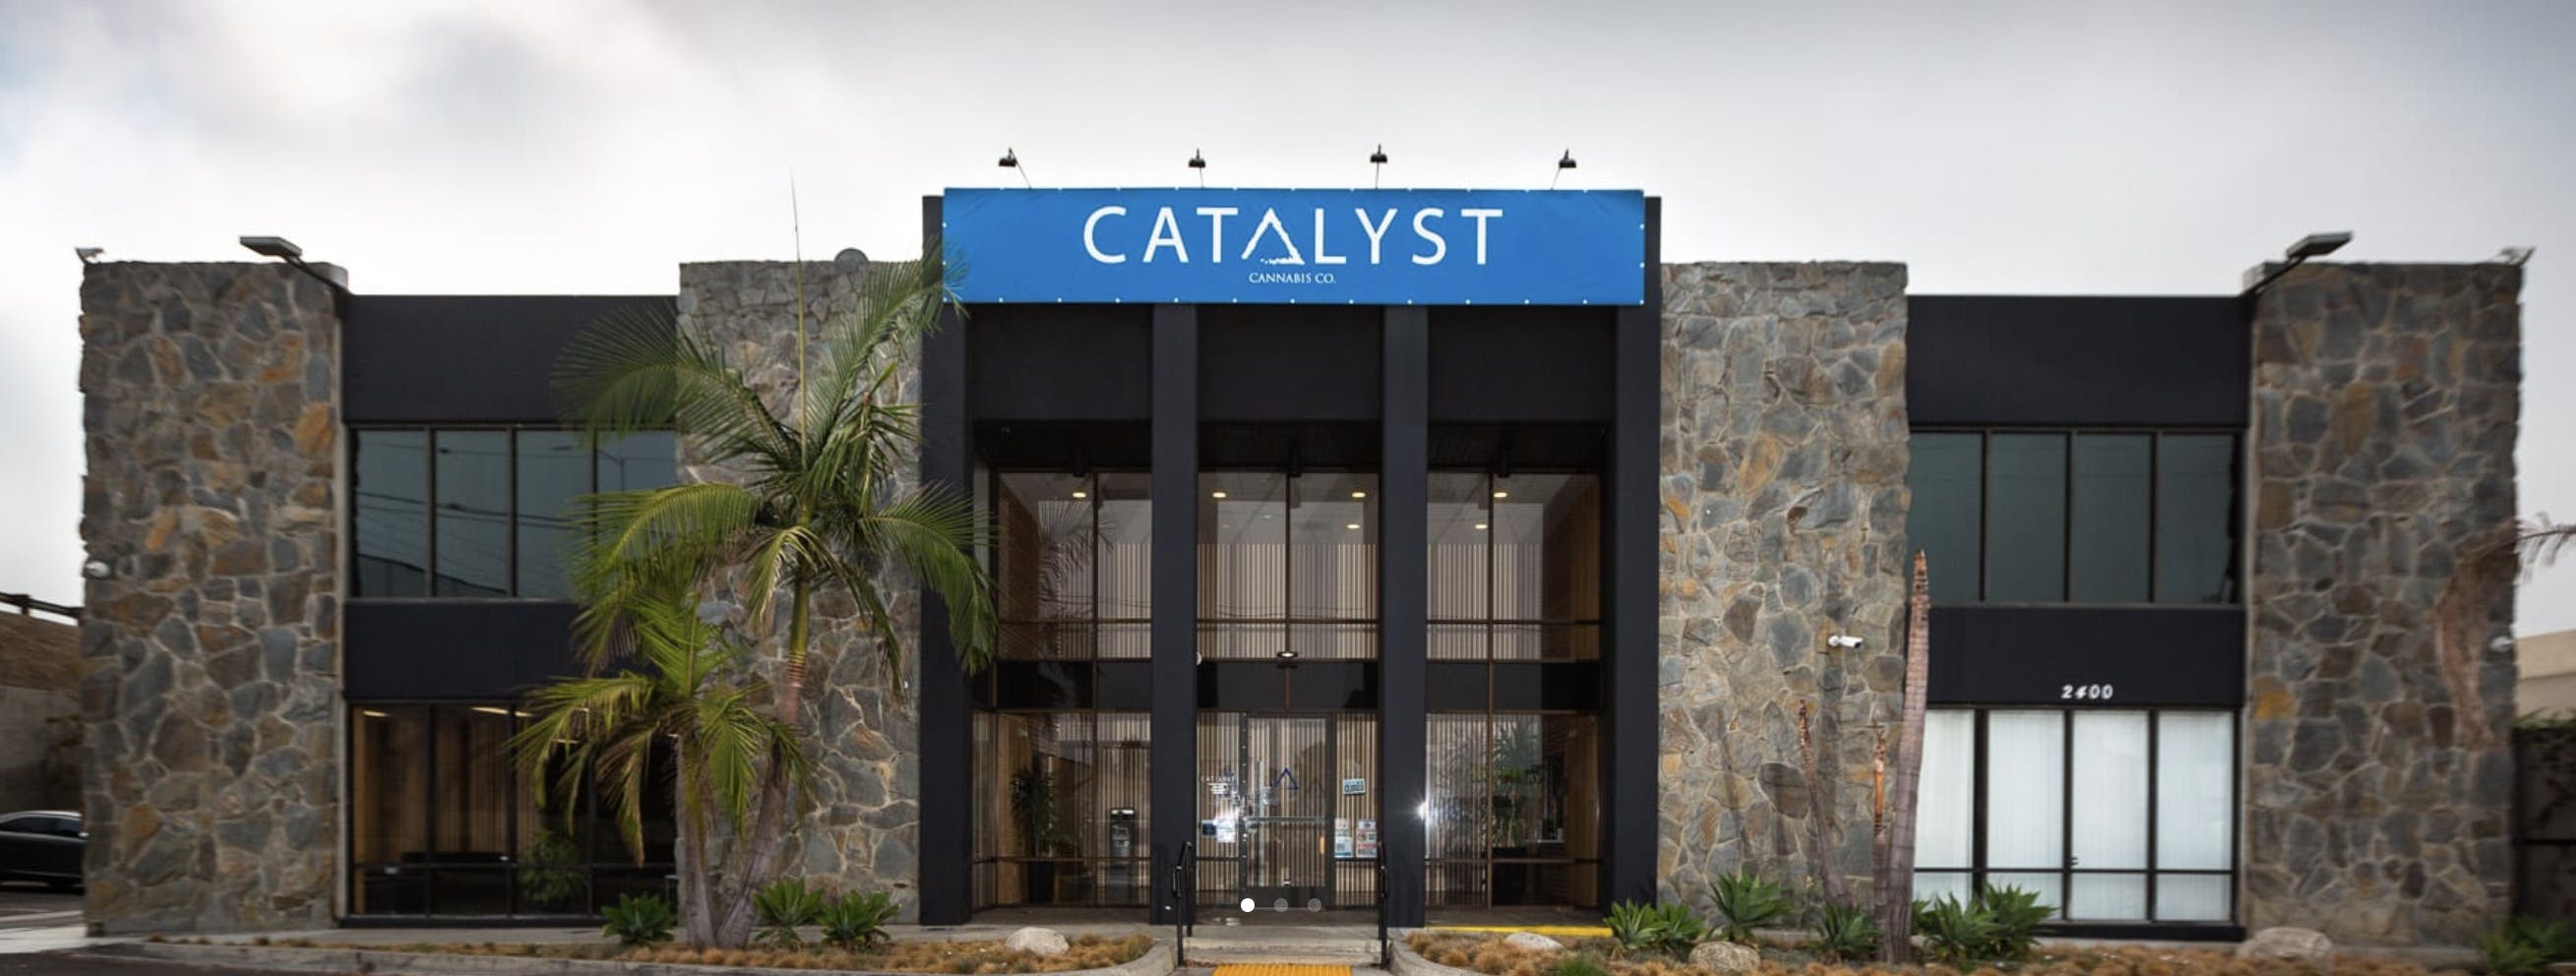 Catalyst Santa Ana Santa Ana Ca Dispensary Leafly 9879